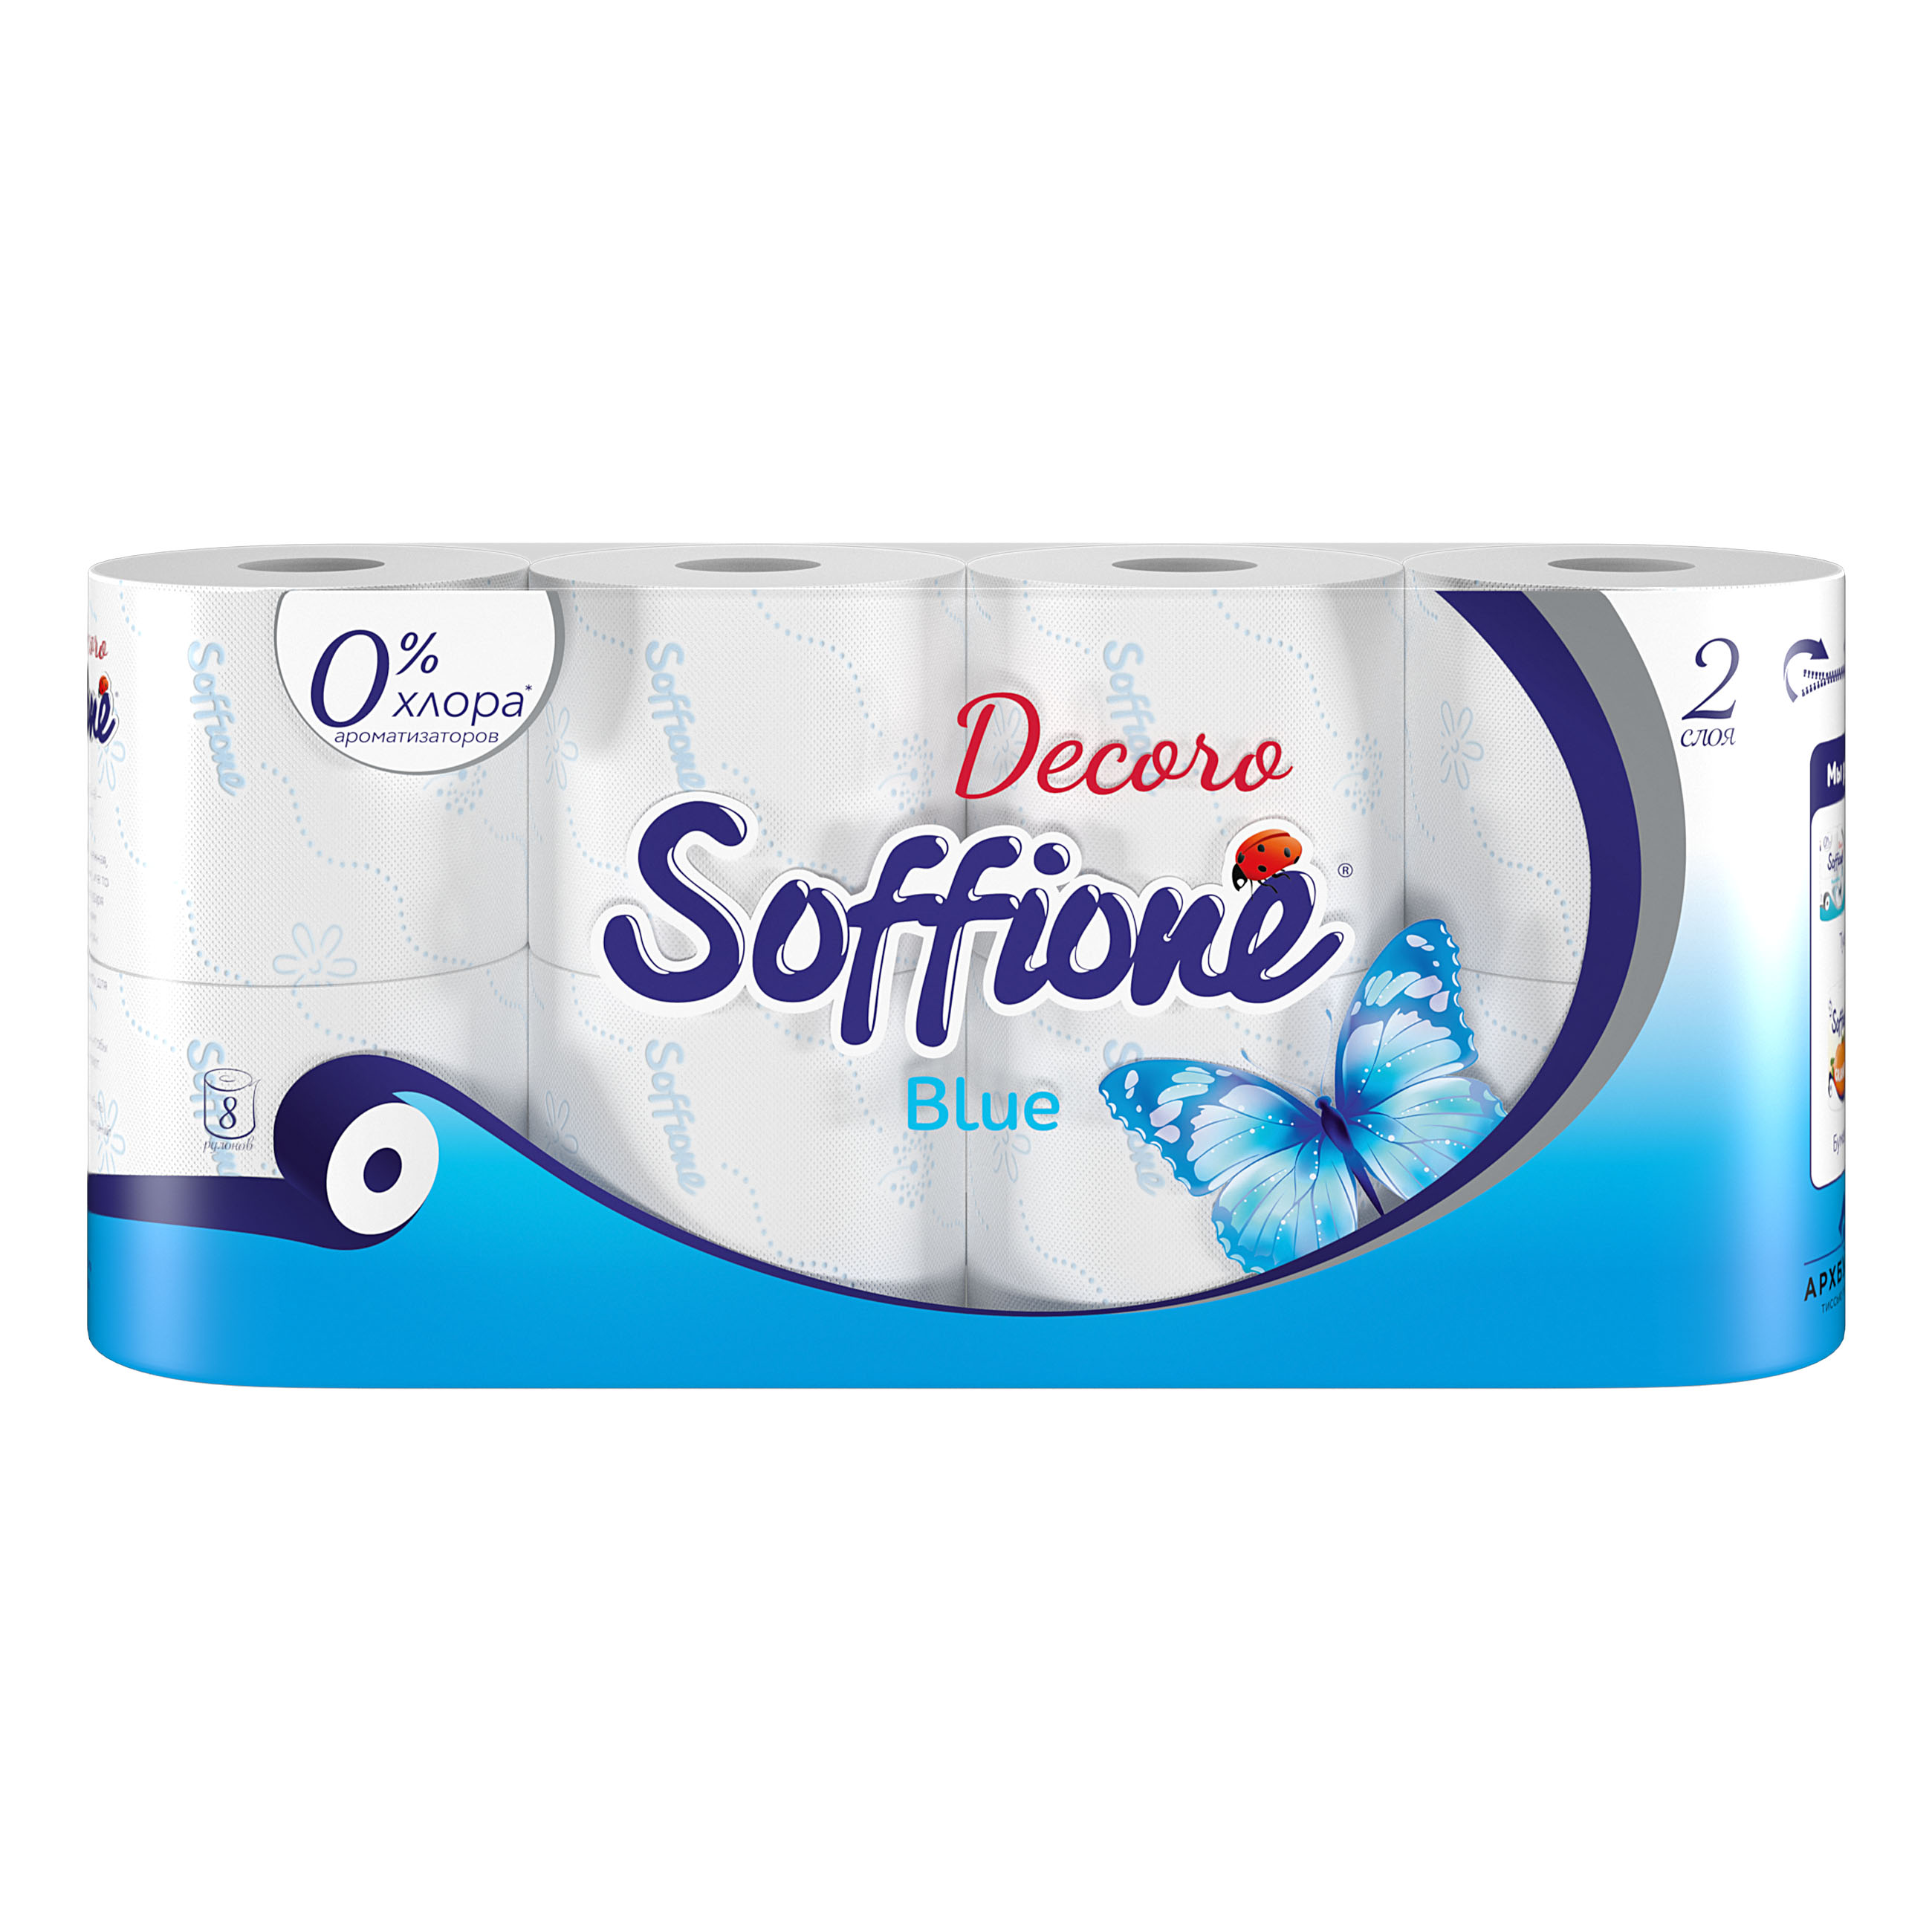 Туалетная бумага Soffione Decoro белая двухслойная с голубым тиснением, 8 рулонов туалетная бумага protissue premium c367 двухслойная 12 рулонов по 112 м